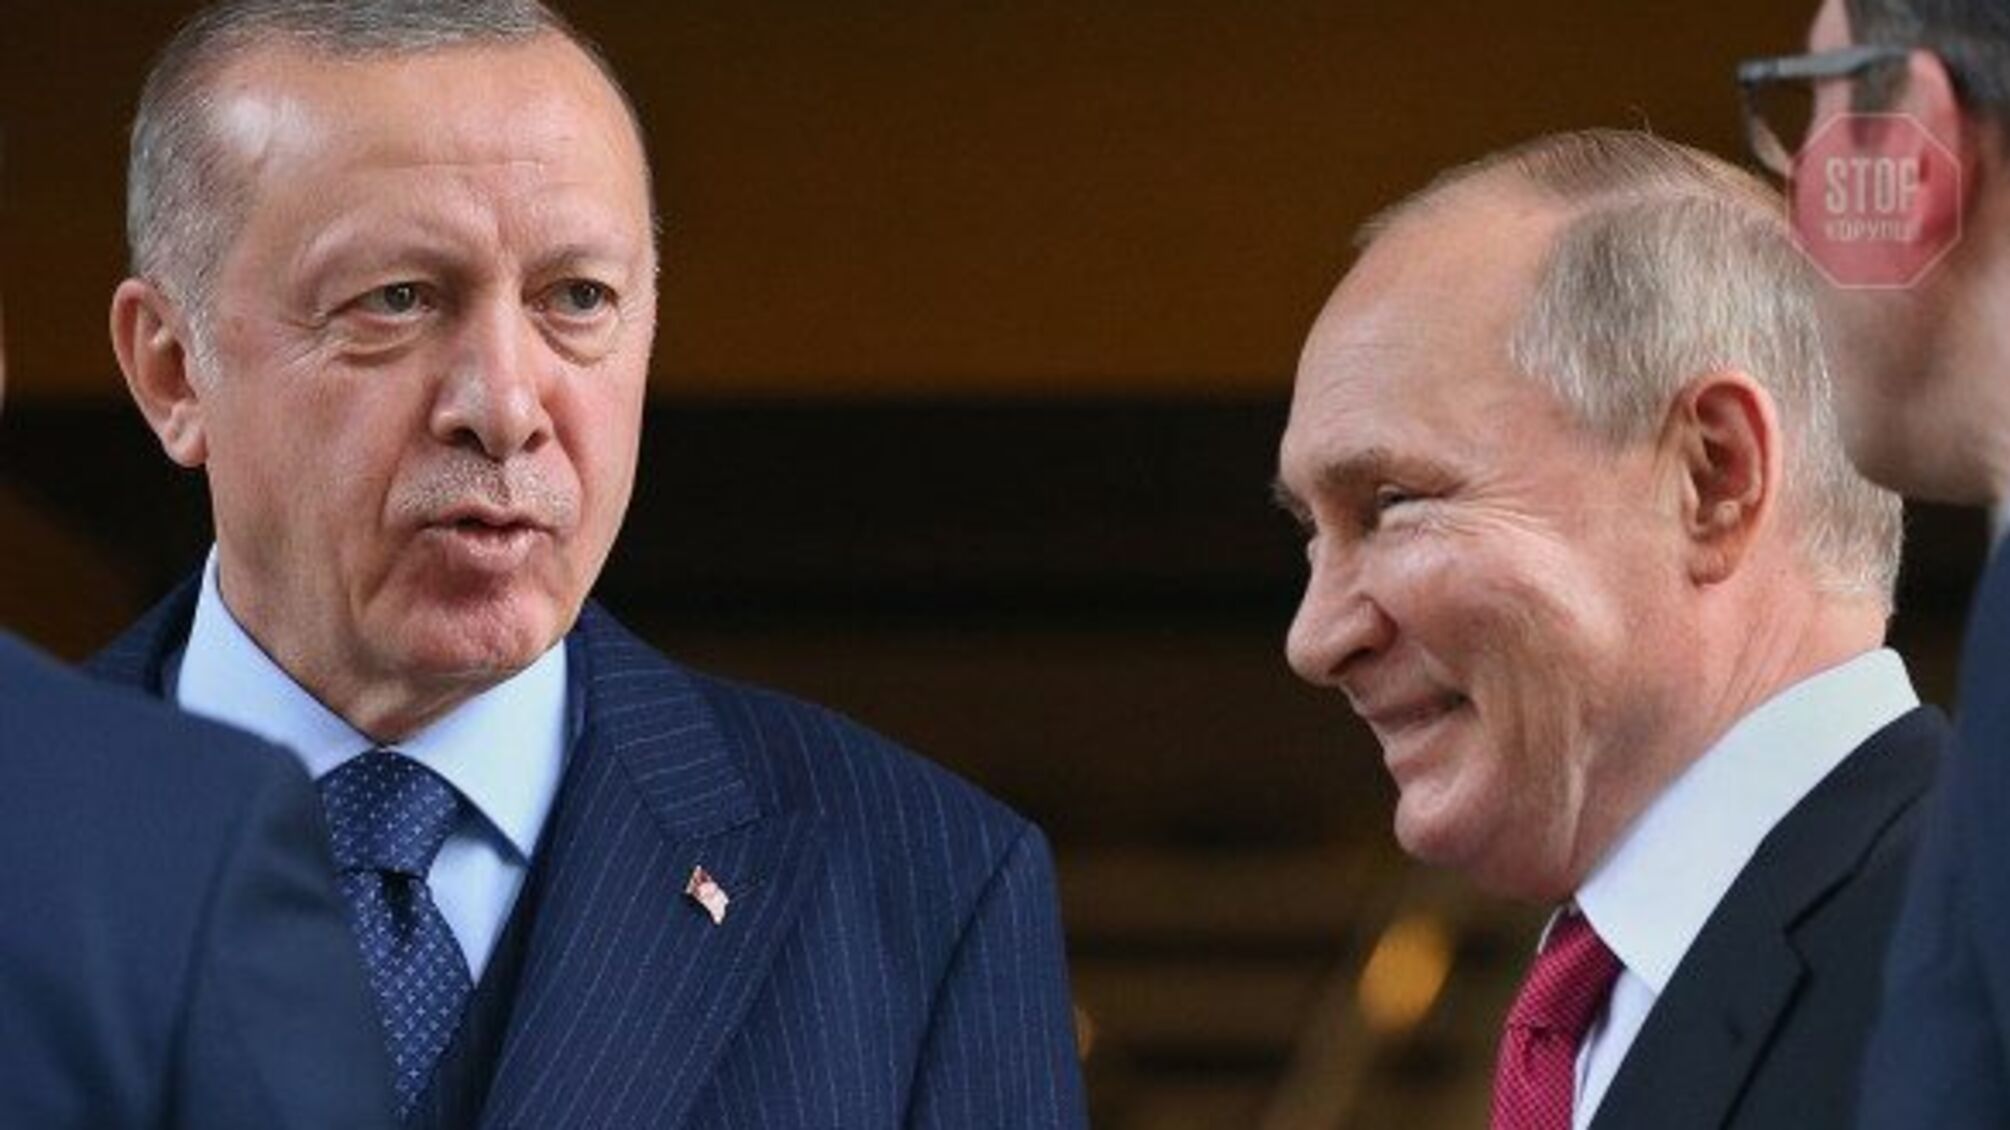 Обсуждали Украину: Эрдоган позвонил Путину